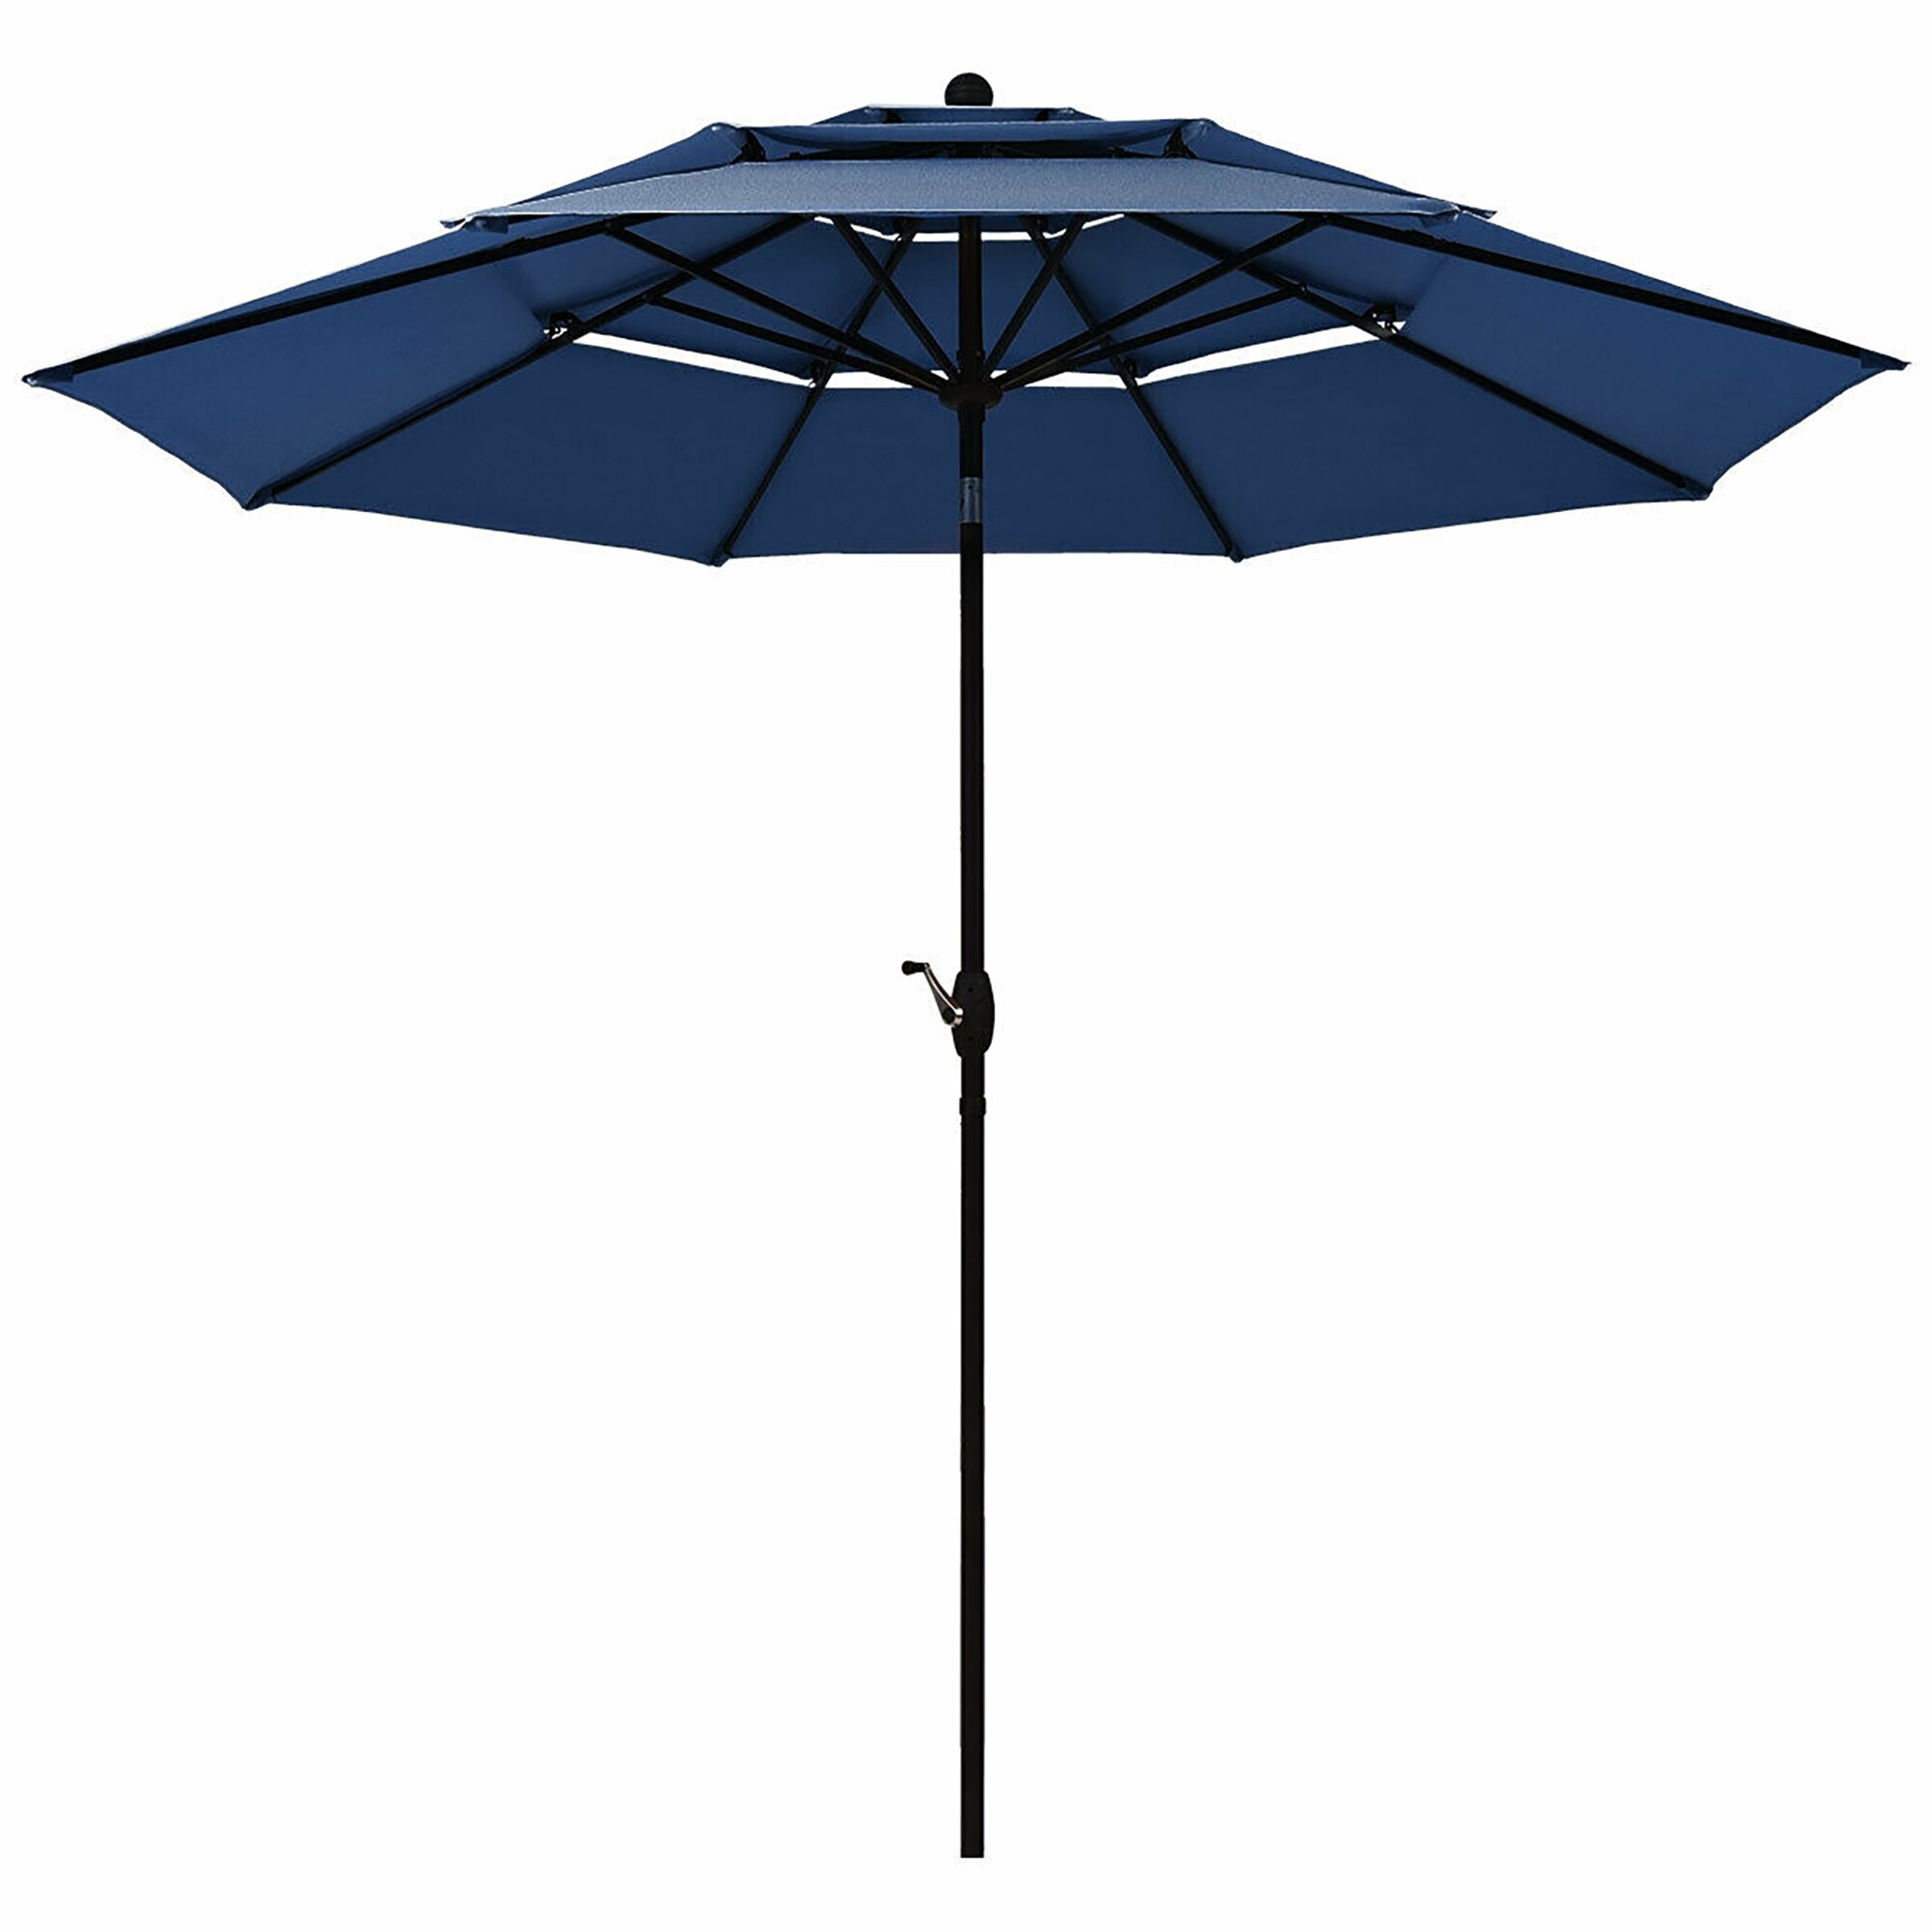 CASAINC 10-ft Navy Auto-tilt Garden Patio Umbrella in the Patio ...